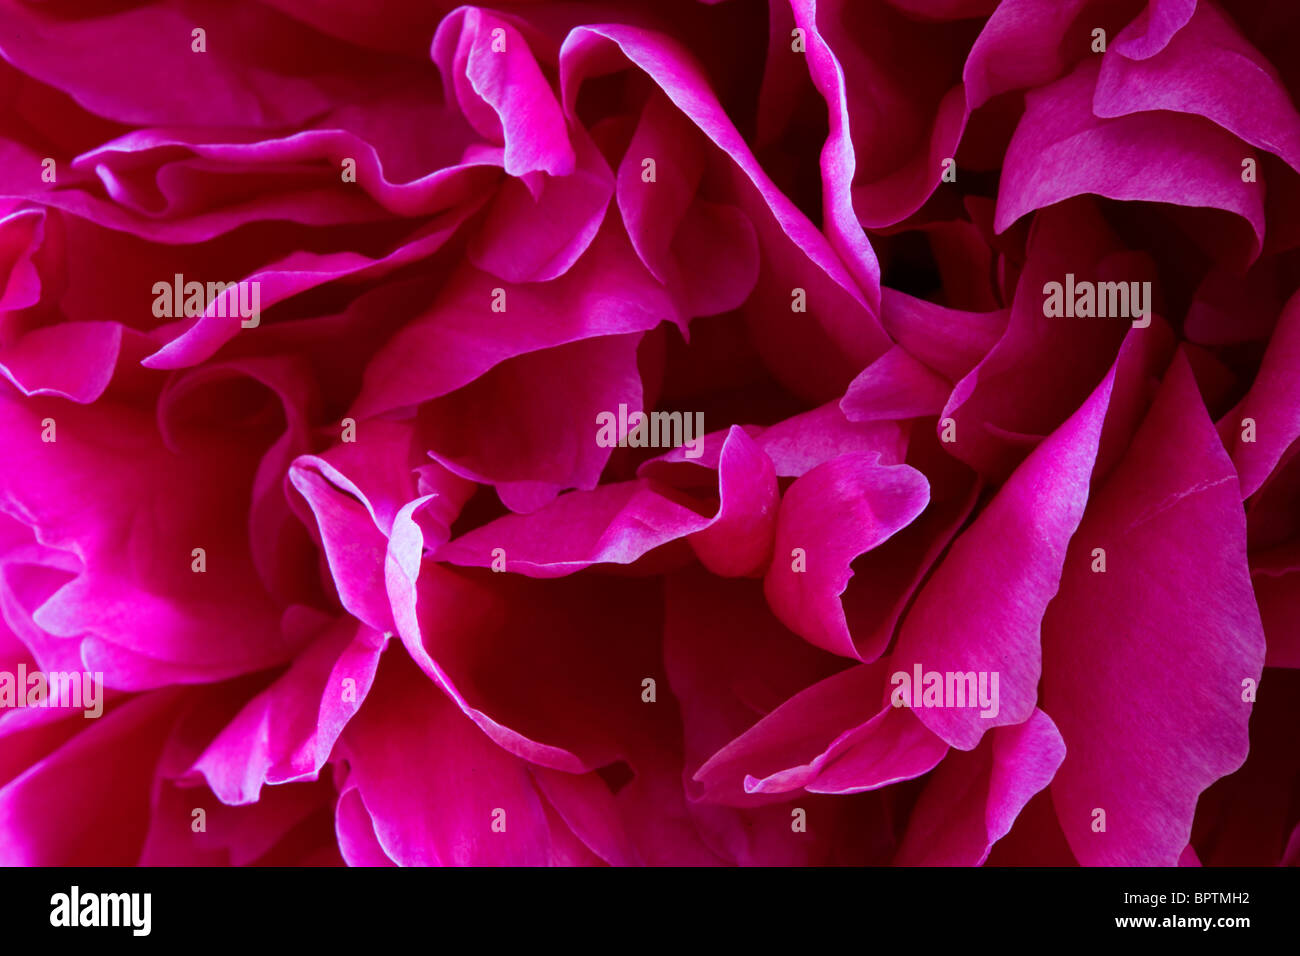 Extreme closeup image of pink peony petals Stock Photo